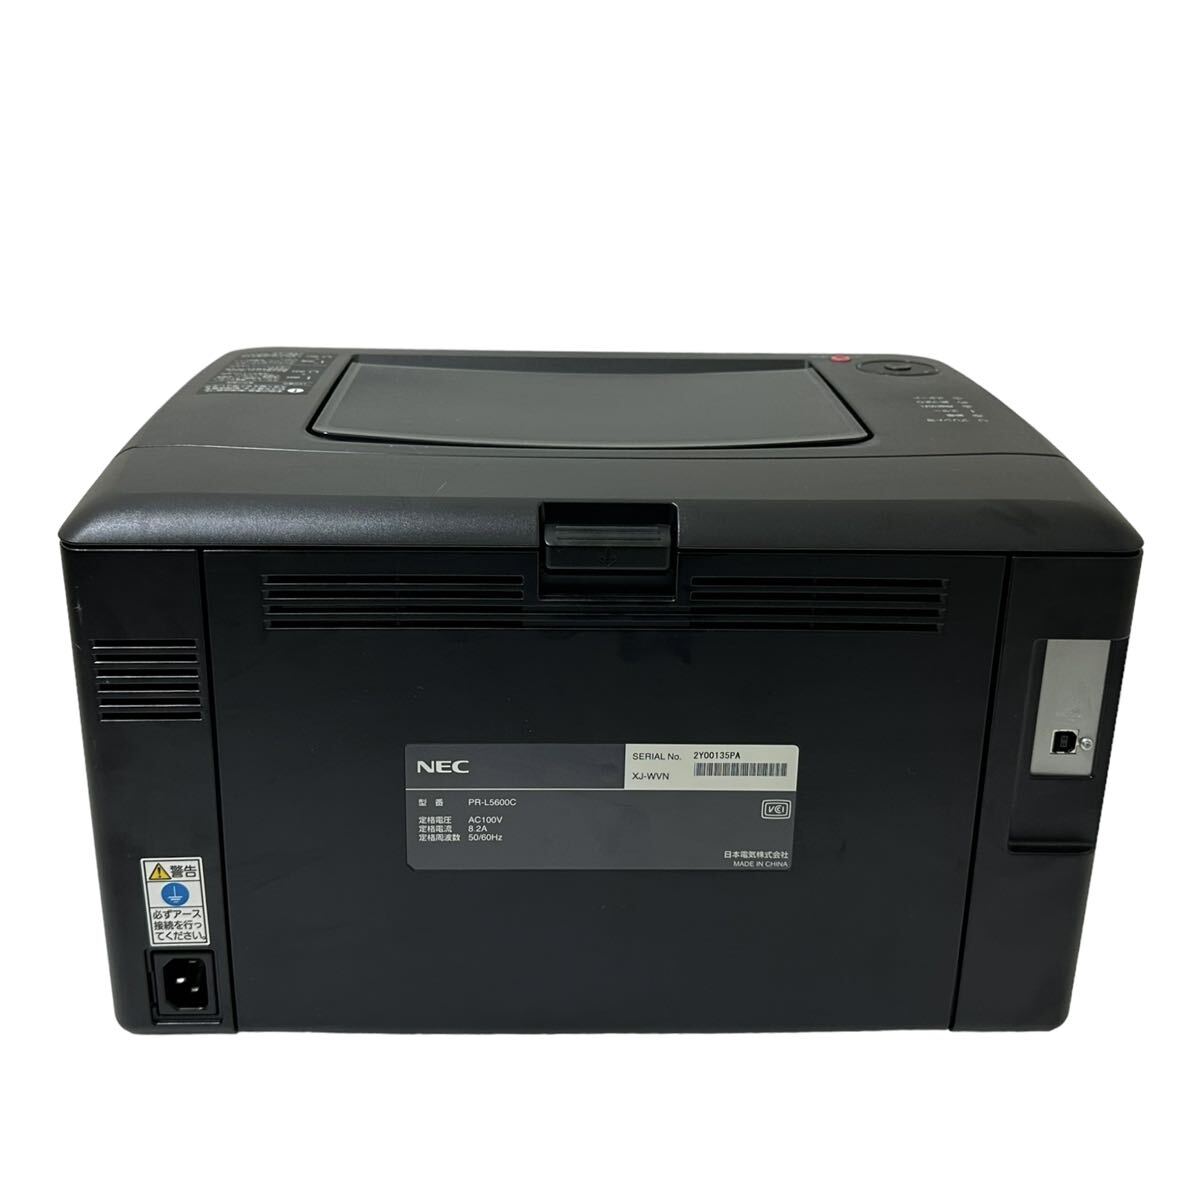 ★ 人気商品 ★ NEC MultiWriter PR-L5600C カラー レーザープリンター プリンター 日本電気 ビジネスパーソナル プリンタ A4の画像7